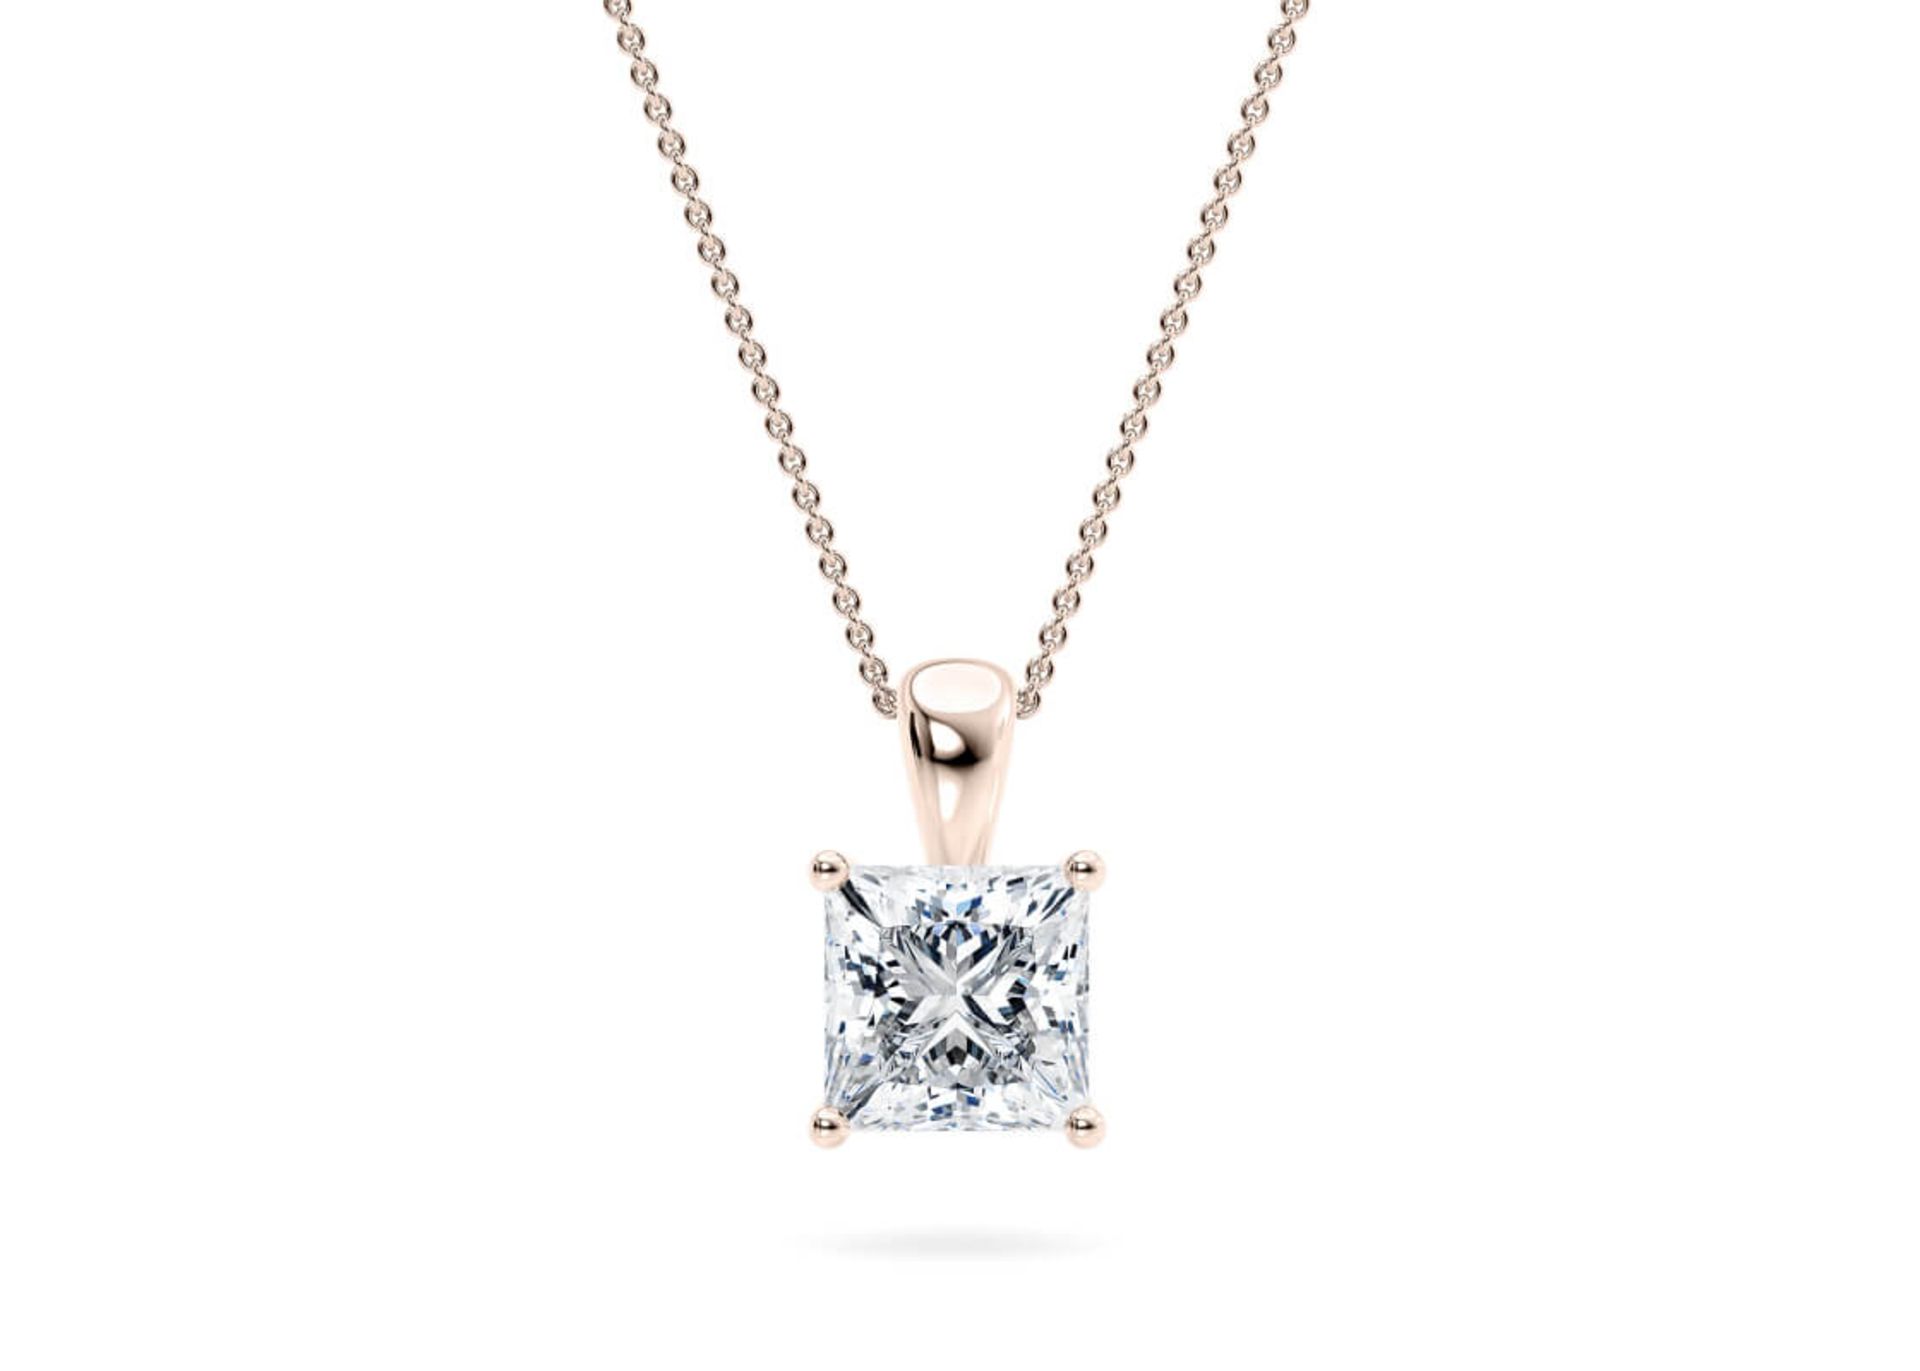 Princess Cut Diamond 2.00 Carat D Colour VS1 Clarity - Necklace Pendant - 18kt Rose Gold